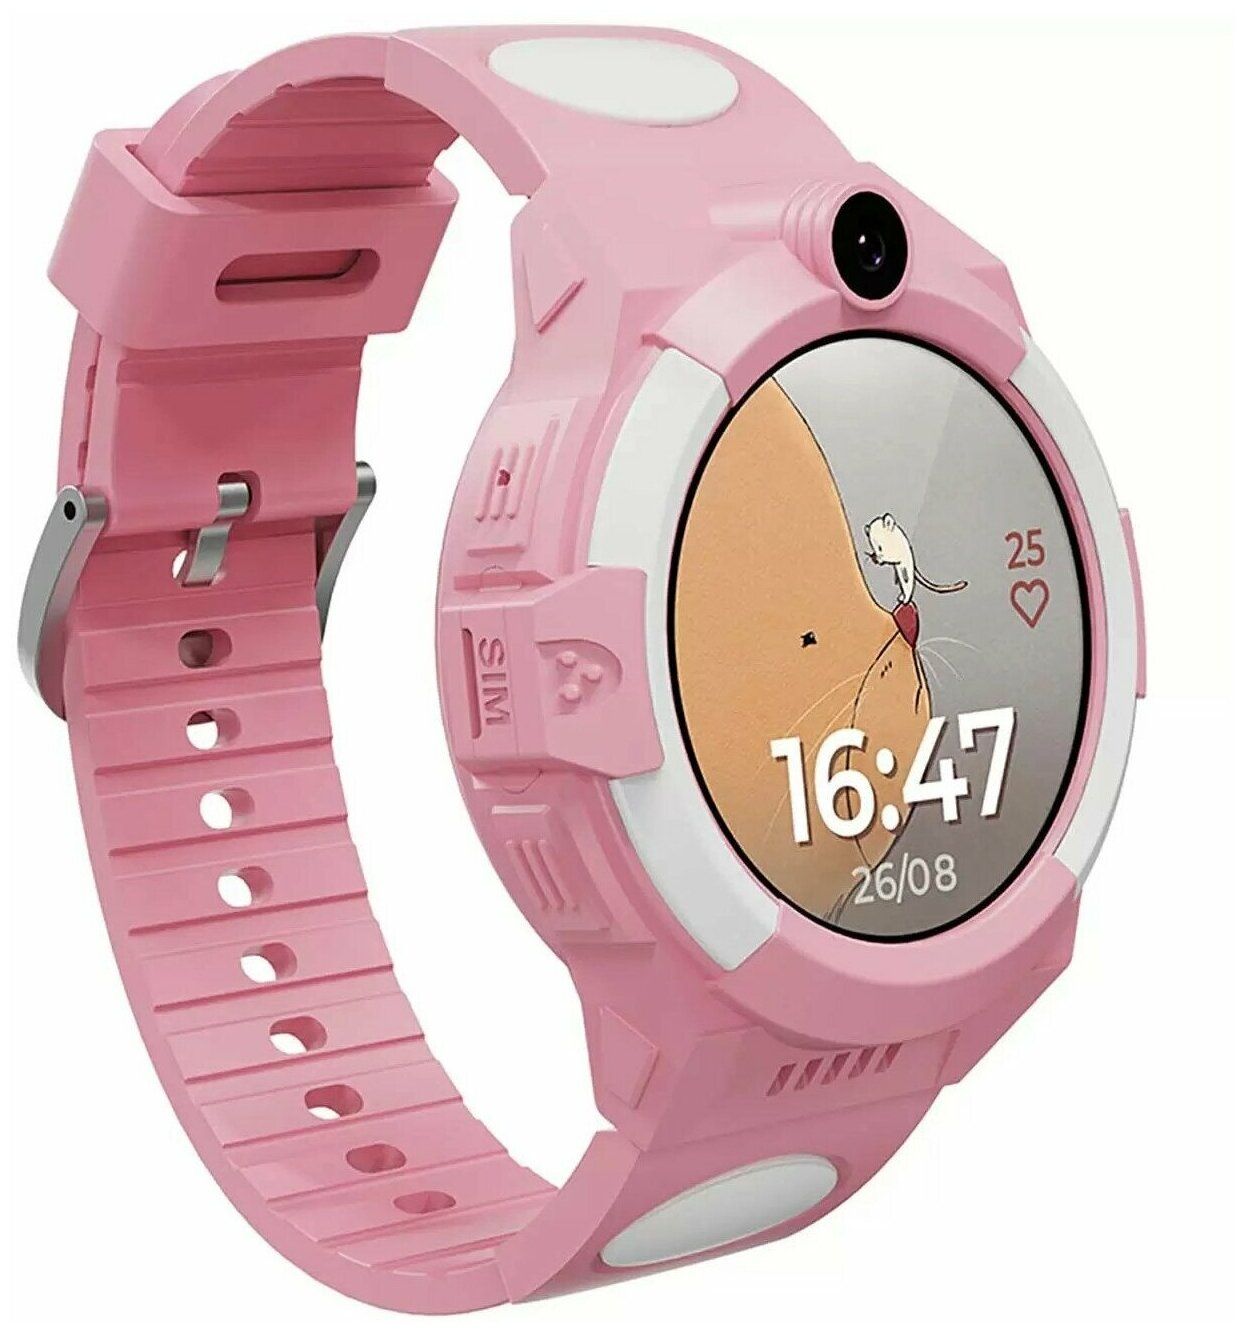 Умные часы Aimoto Sport 4G Pink 9220102 смарт реле 4g европа южная америка австралия четырехсторонний контроллер 4g дистанционное управление через приложение веб страница sms со